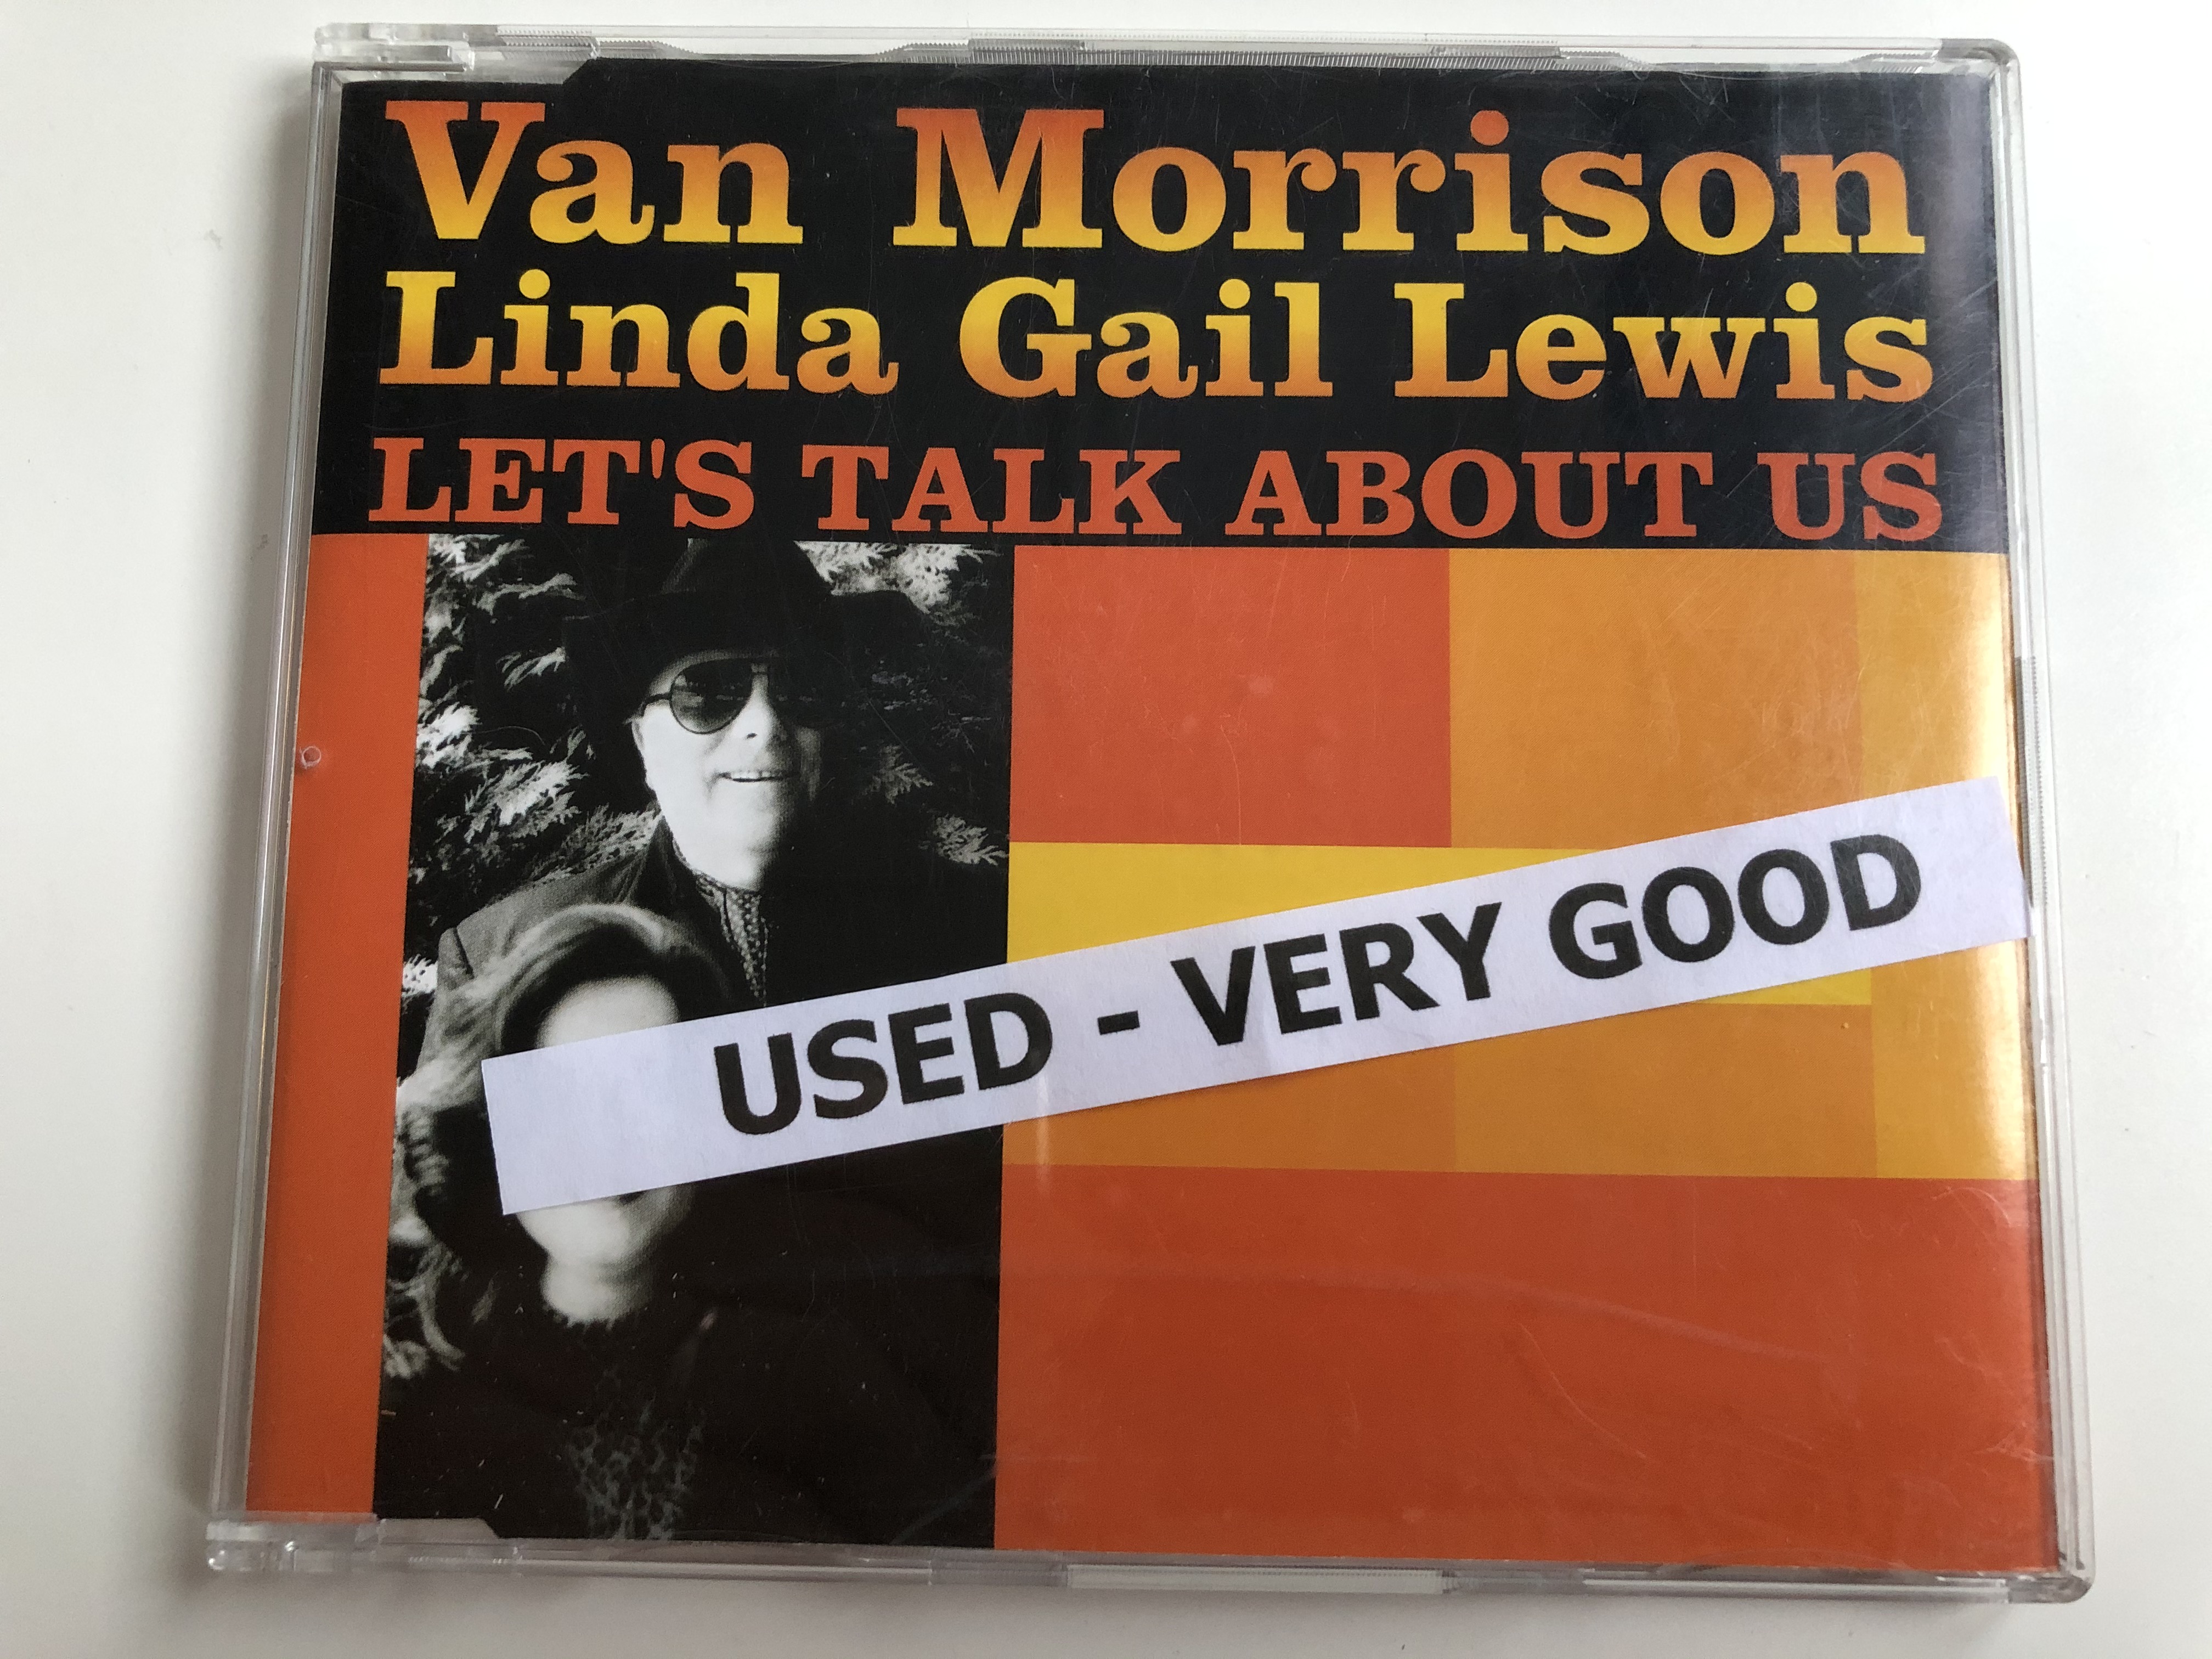 van-morrison-linda-gail-lewis-let-s-talk-about-us-exile-audio-cd-2000-stereo-724389710625-1-.jpg